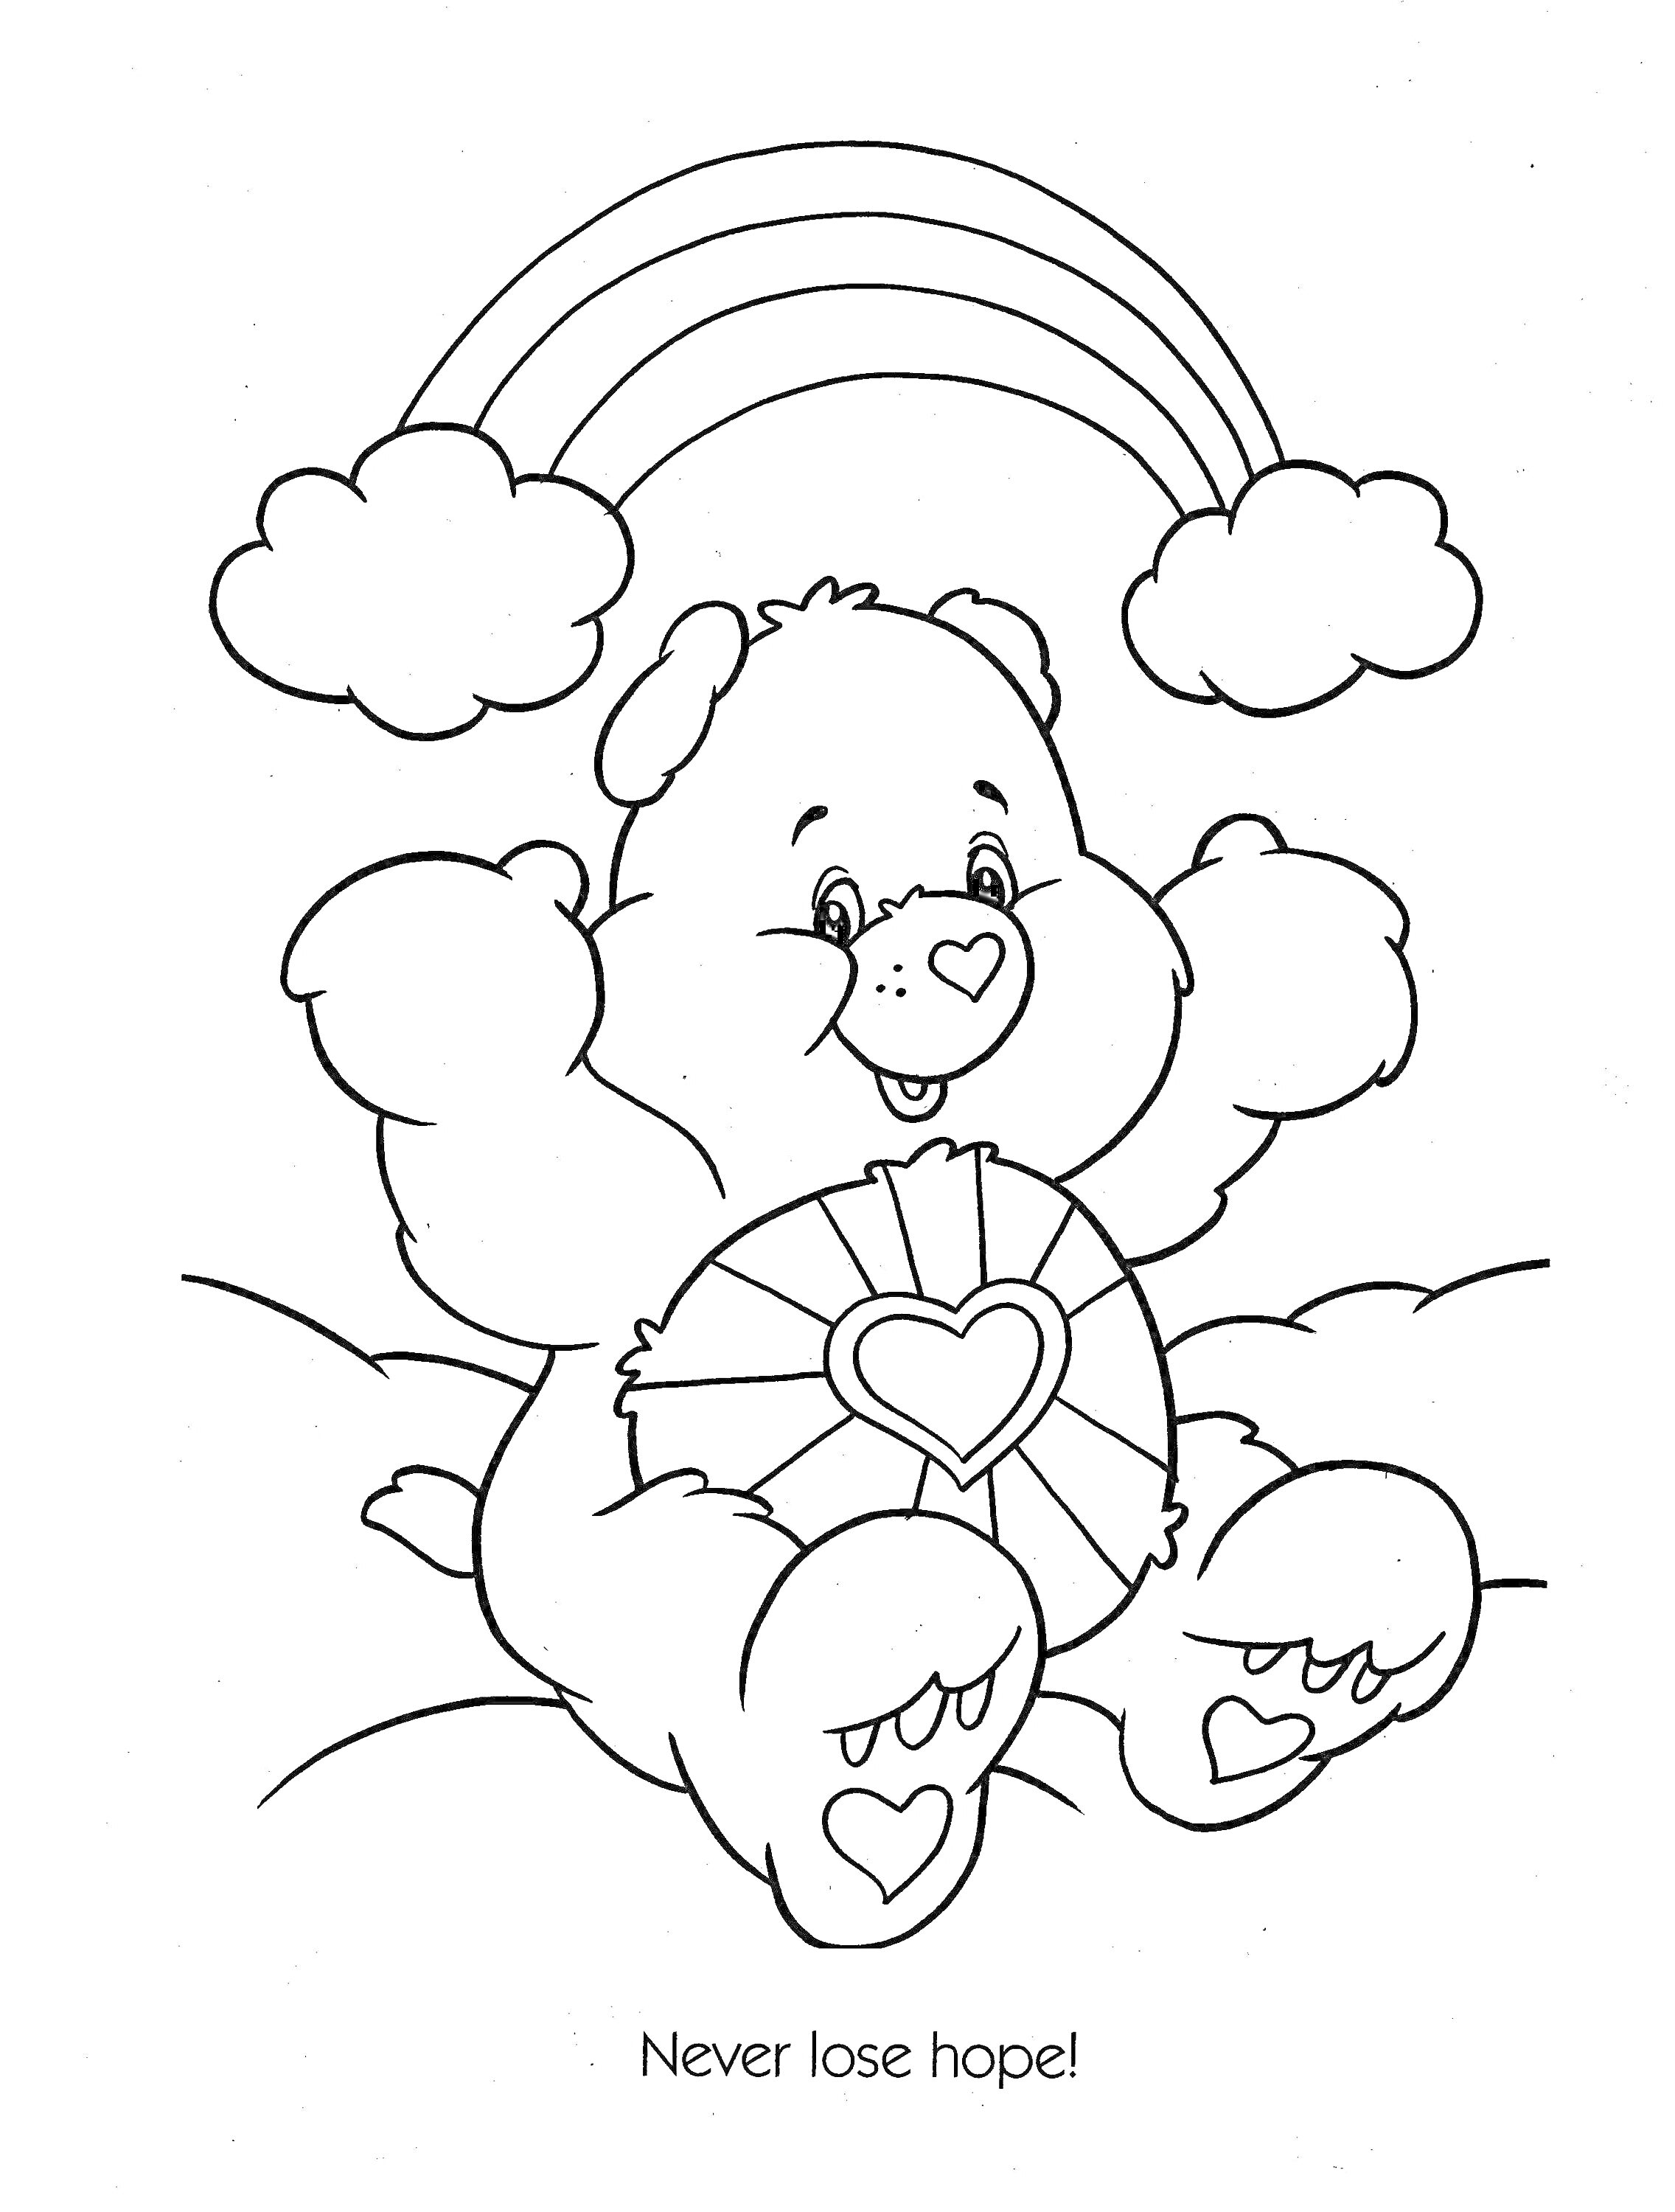 Раскраска Мишка с сердечком и радугой над облаками